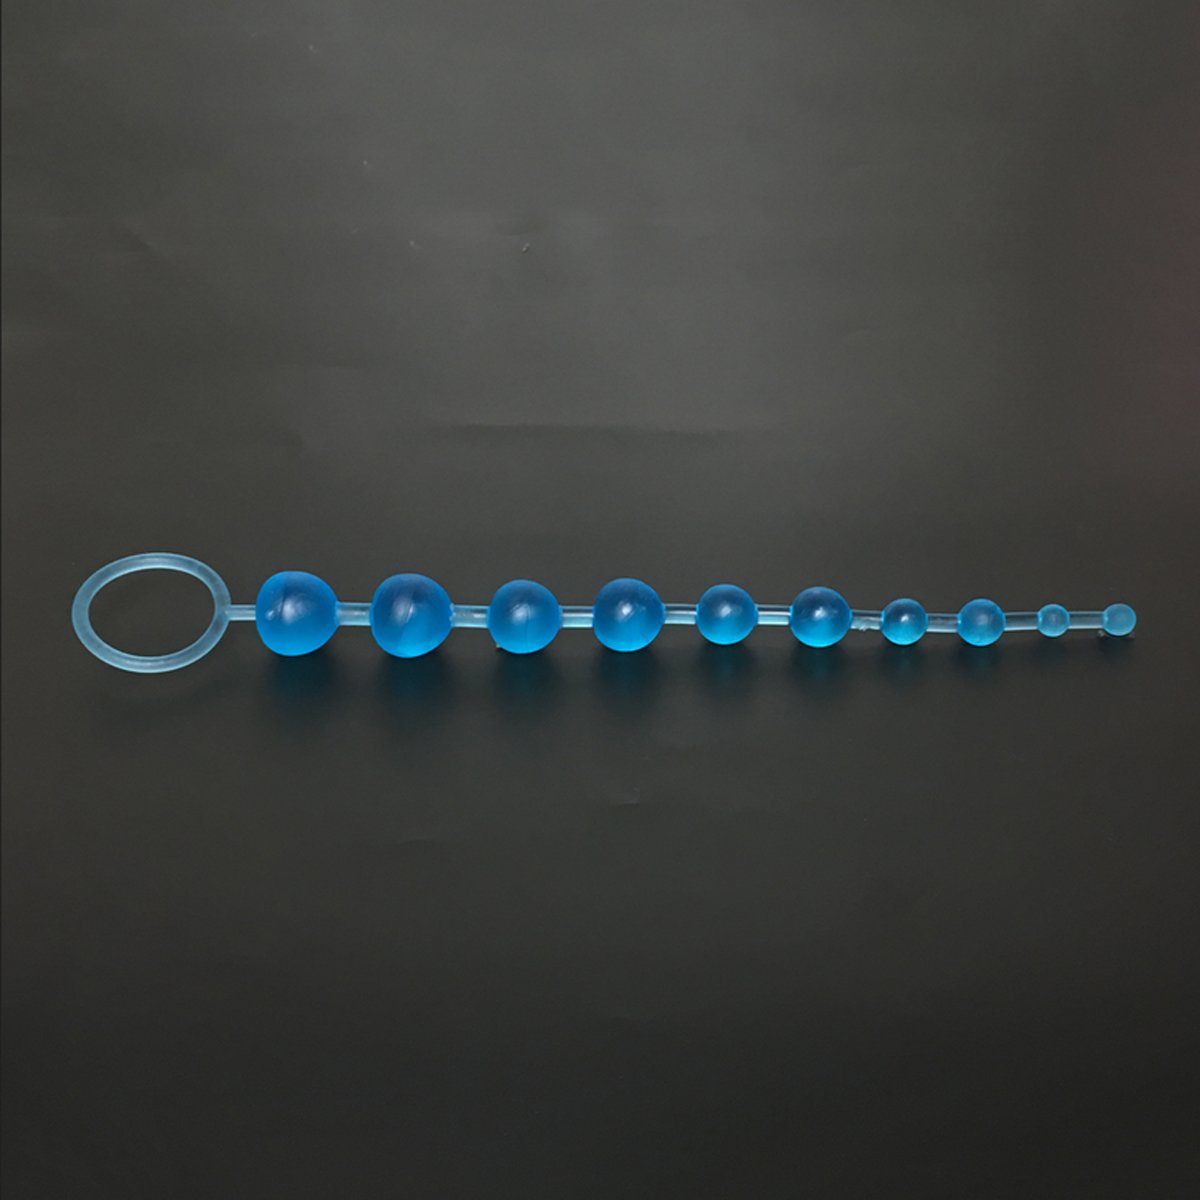 TPFSecret Analkette für Männer und Frauen, ergonomische große 29,5cm Anal Kette, mit 10 Perlen, und unterschiedlichem Durchmesser - Farbe: Blau